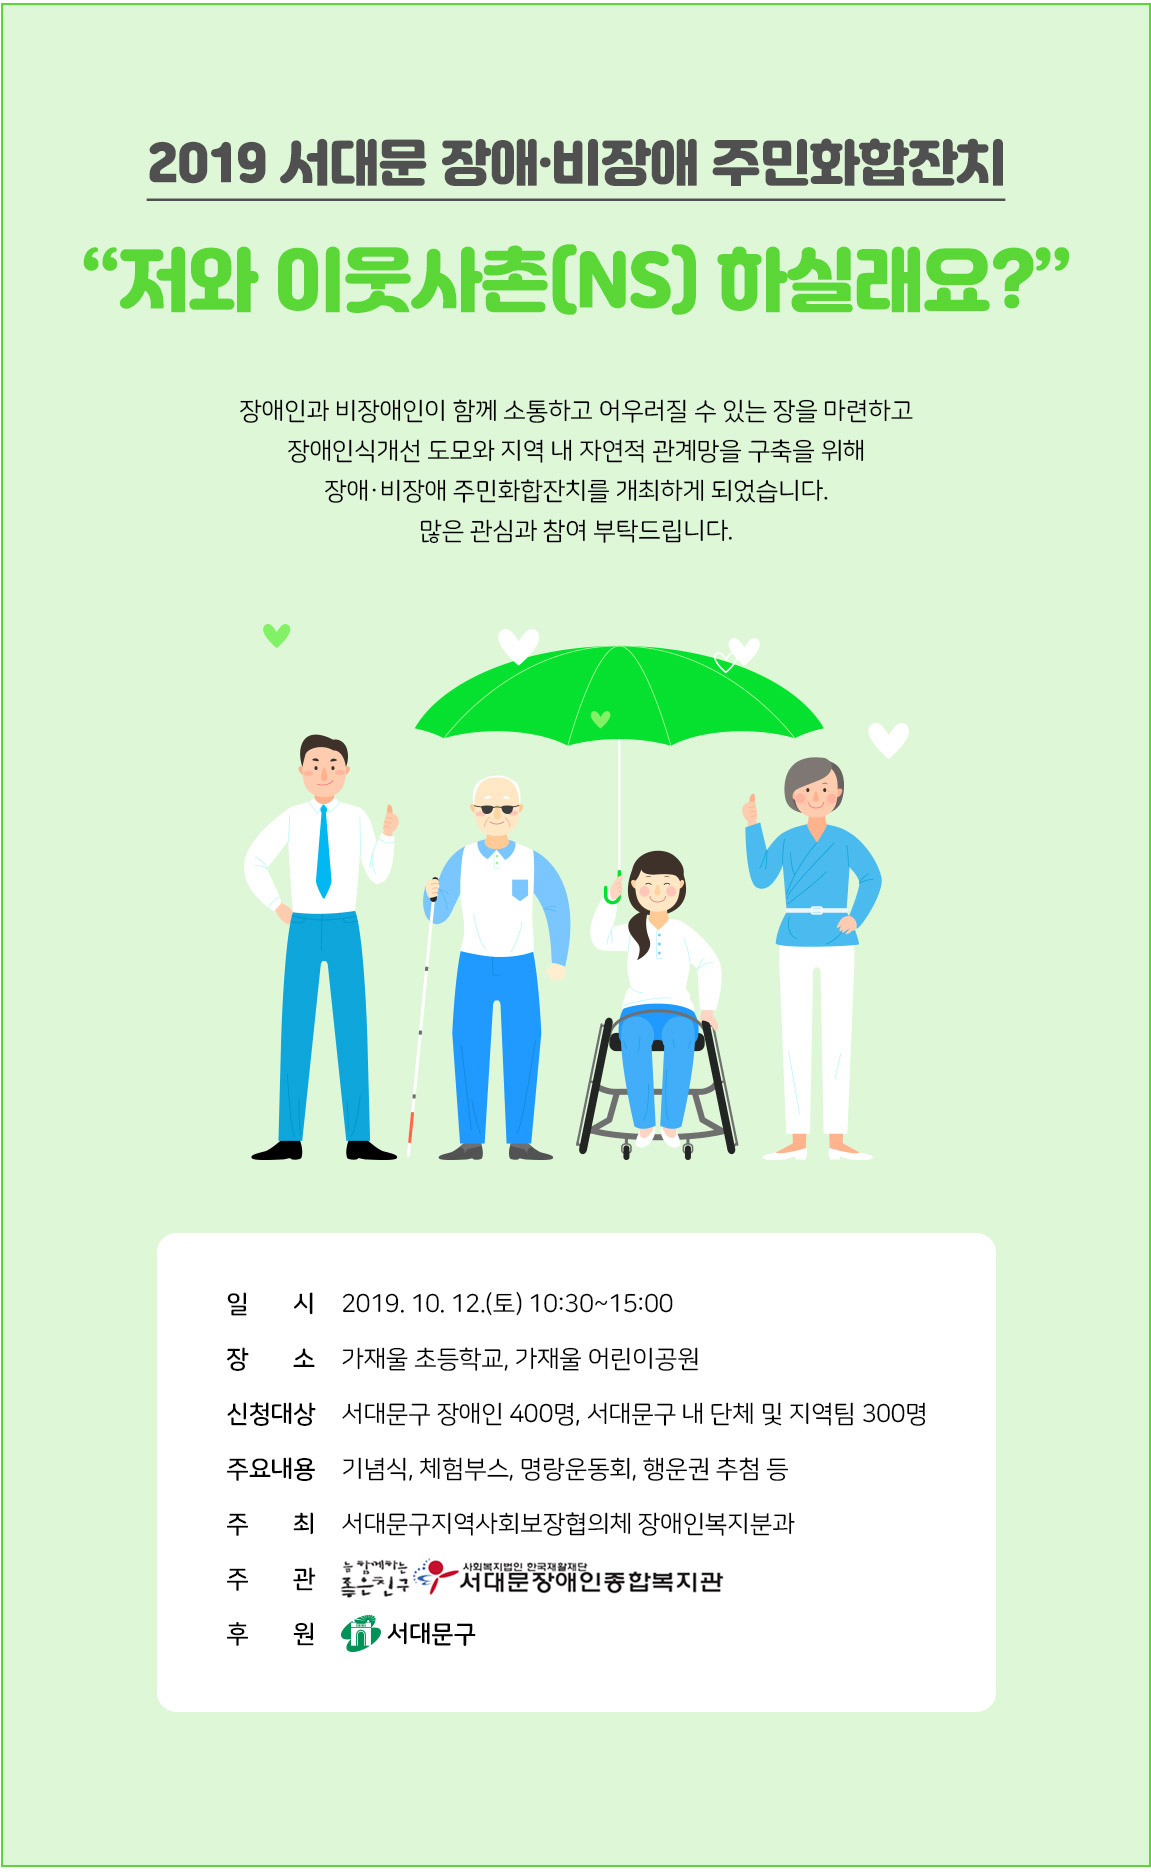 2019 서대문 장애⦁비장애 주민화합잔치
“저와 이웃사촌(NS) 하실래요?”